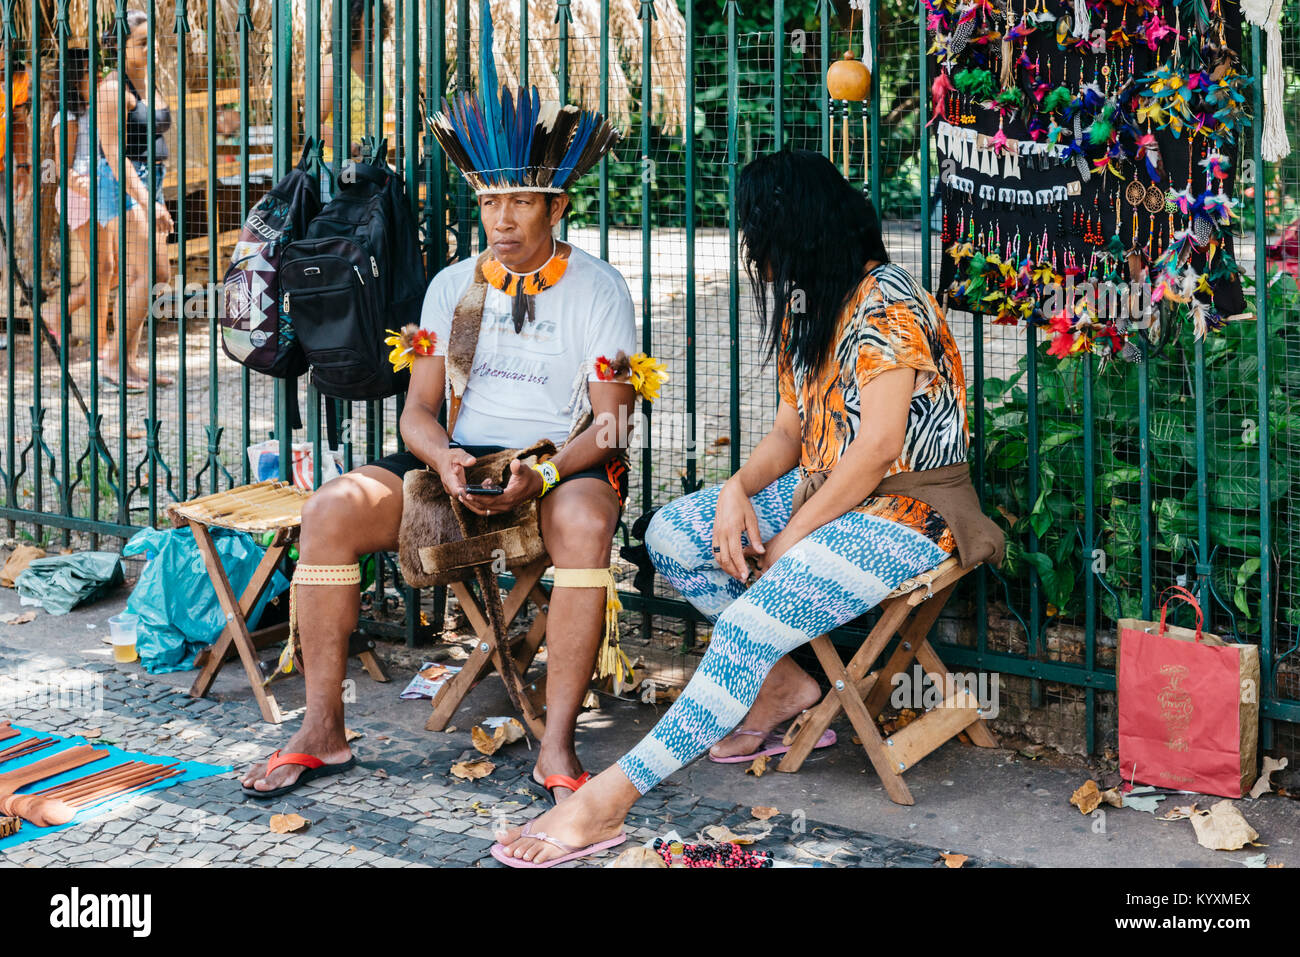 Un homme indigène brésilien sur son téléphone cellulaire Banque D'Images